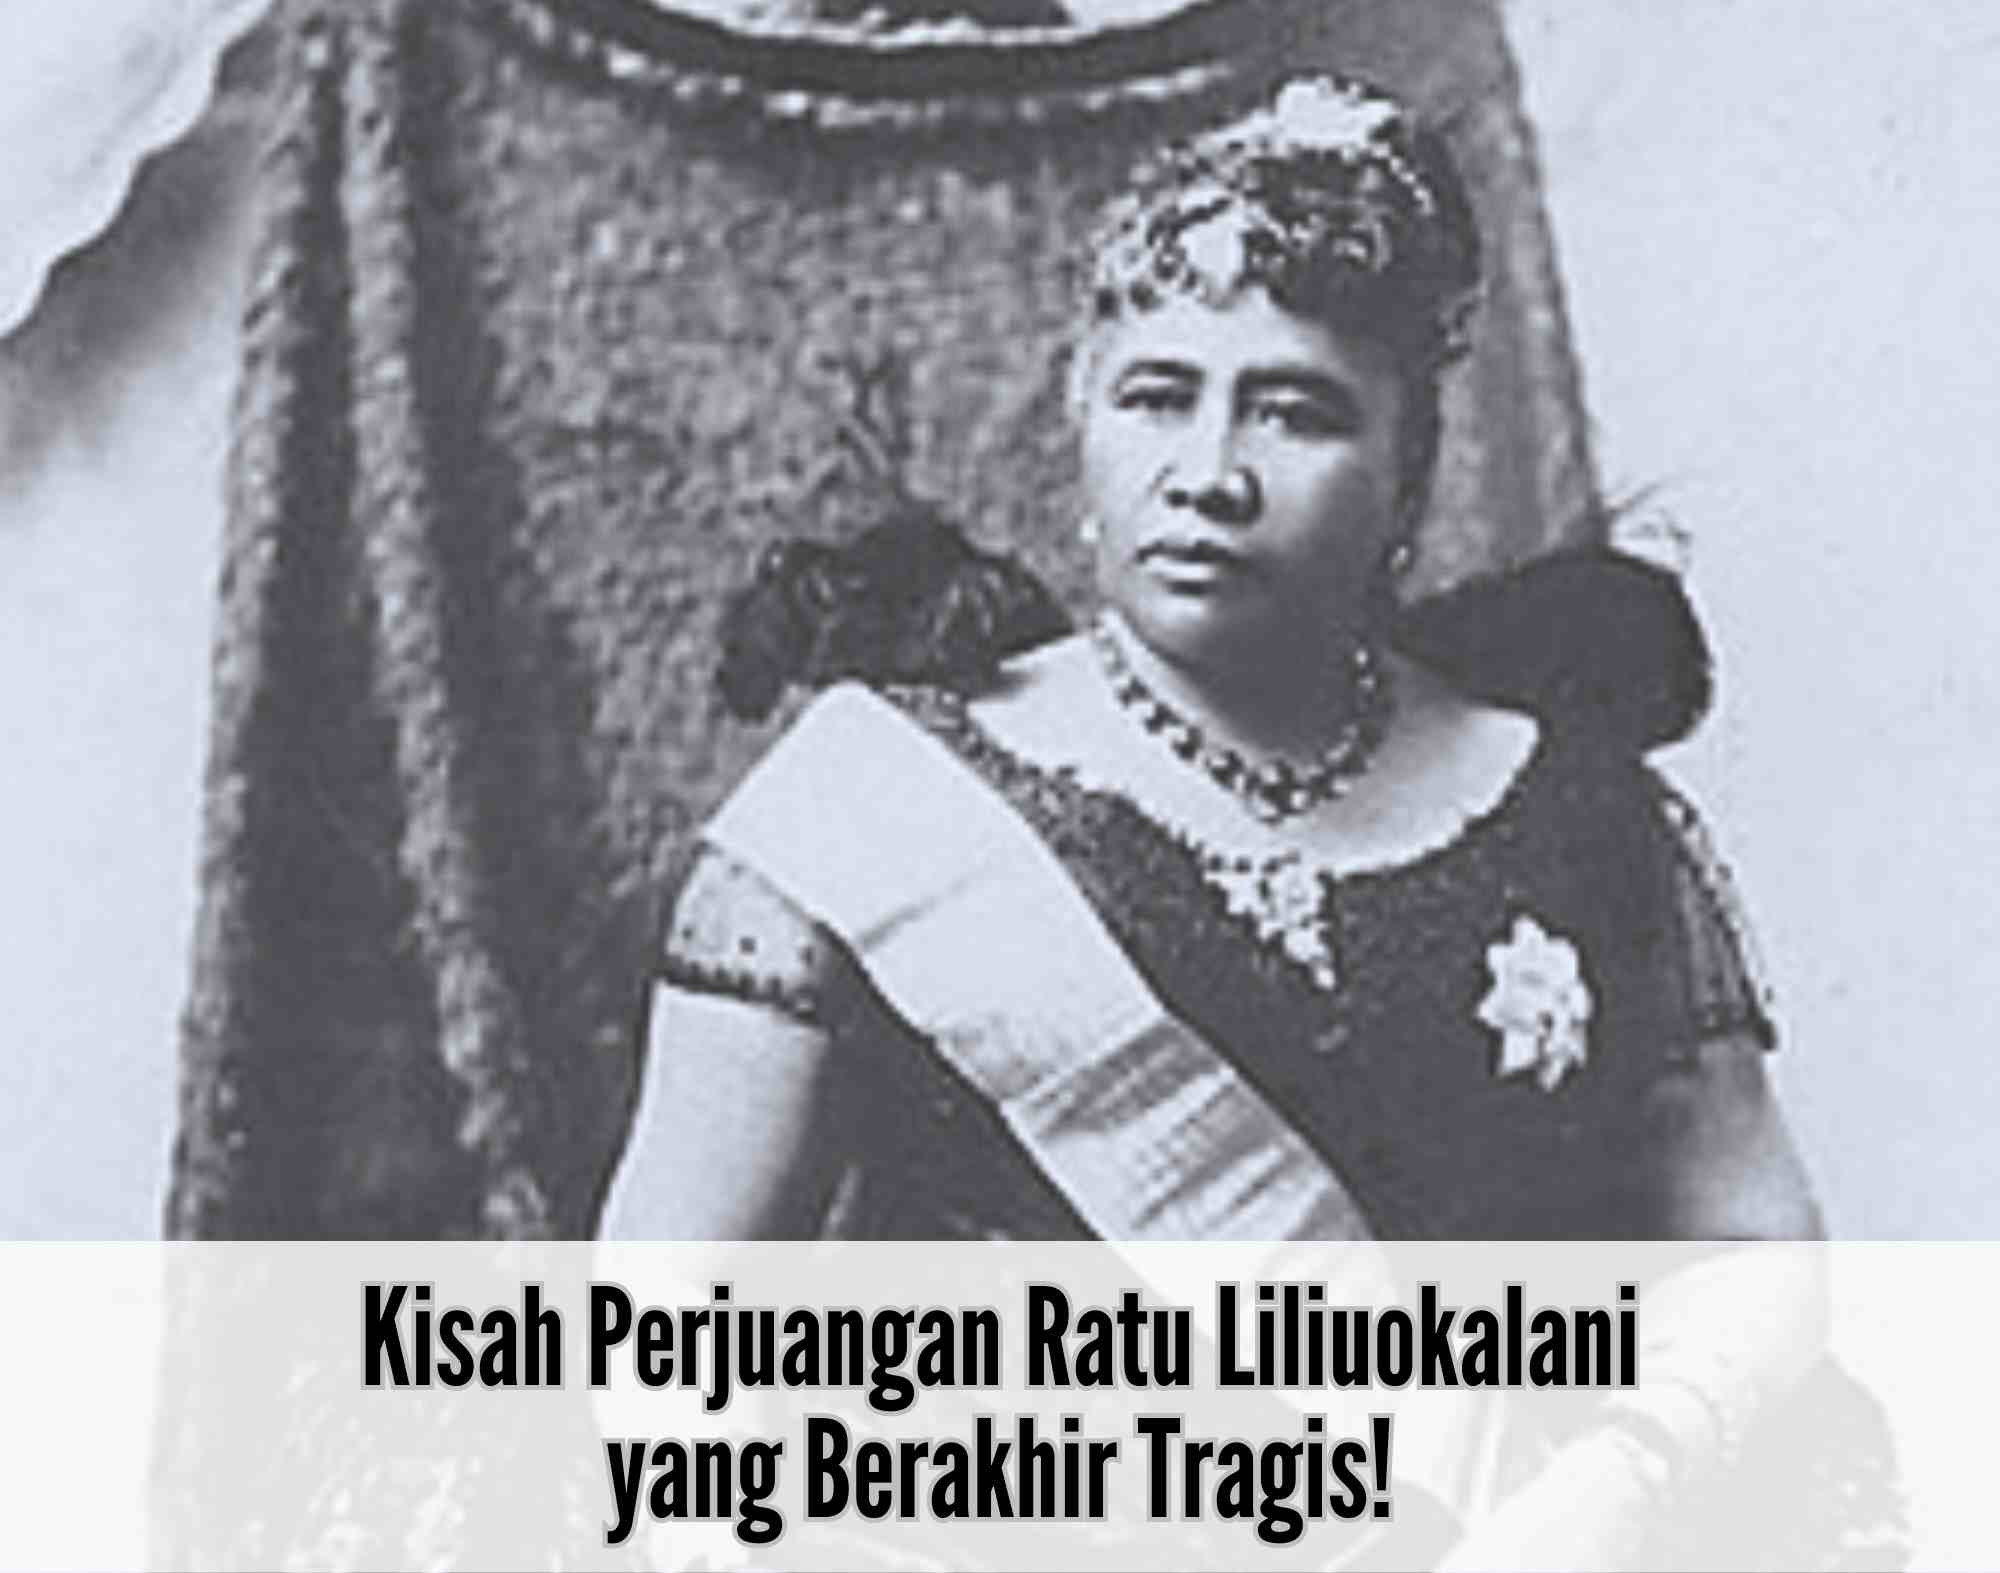 Kisah Perjuangan Ratu Liliuokalani yang Berakhir Tragis, hingga Hawaii Tidak Lagi Jadi Kerajaan!